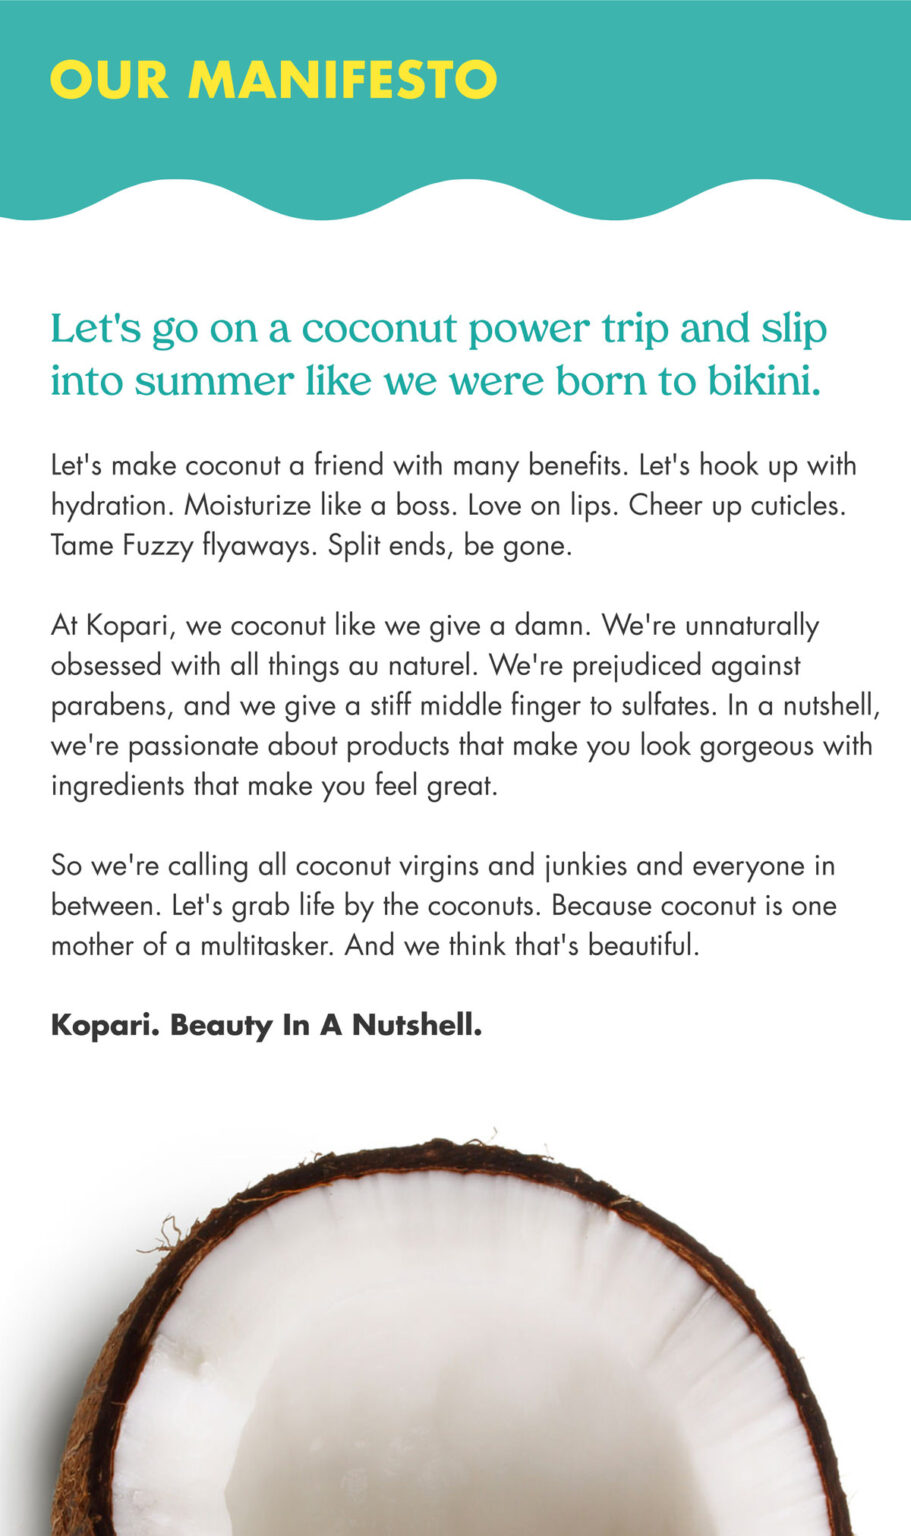 Kopari Manifesto